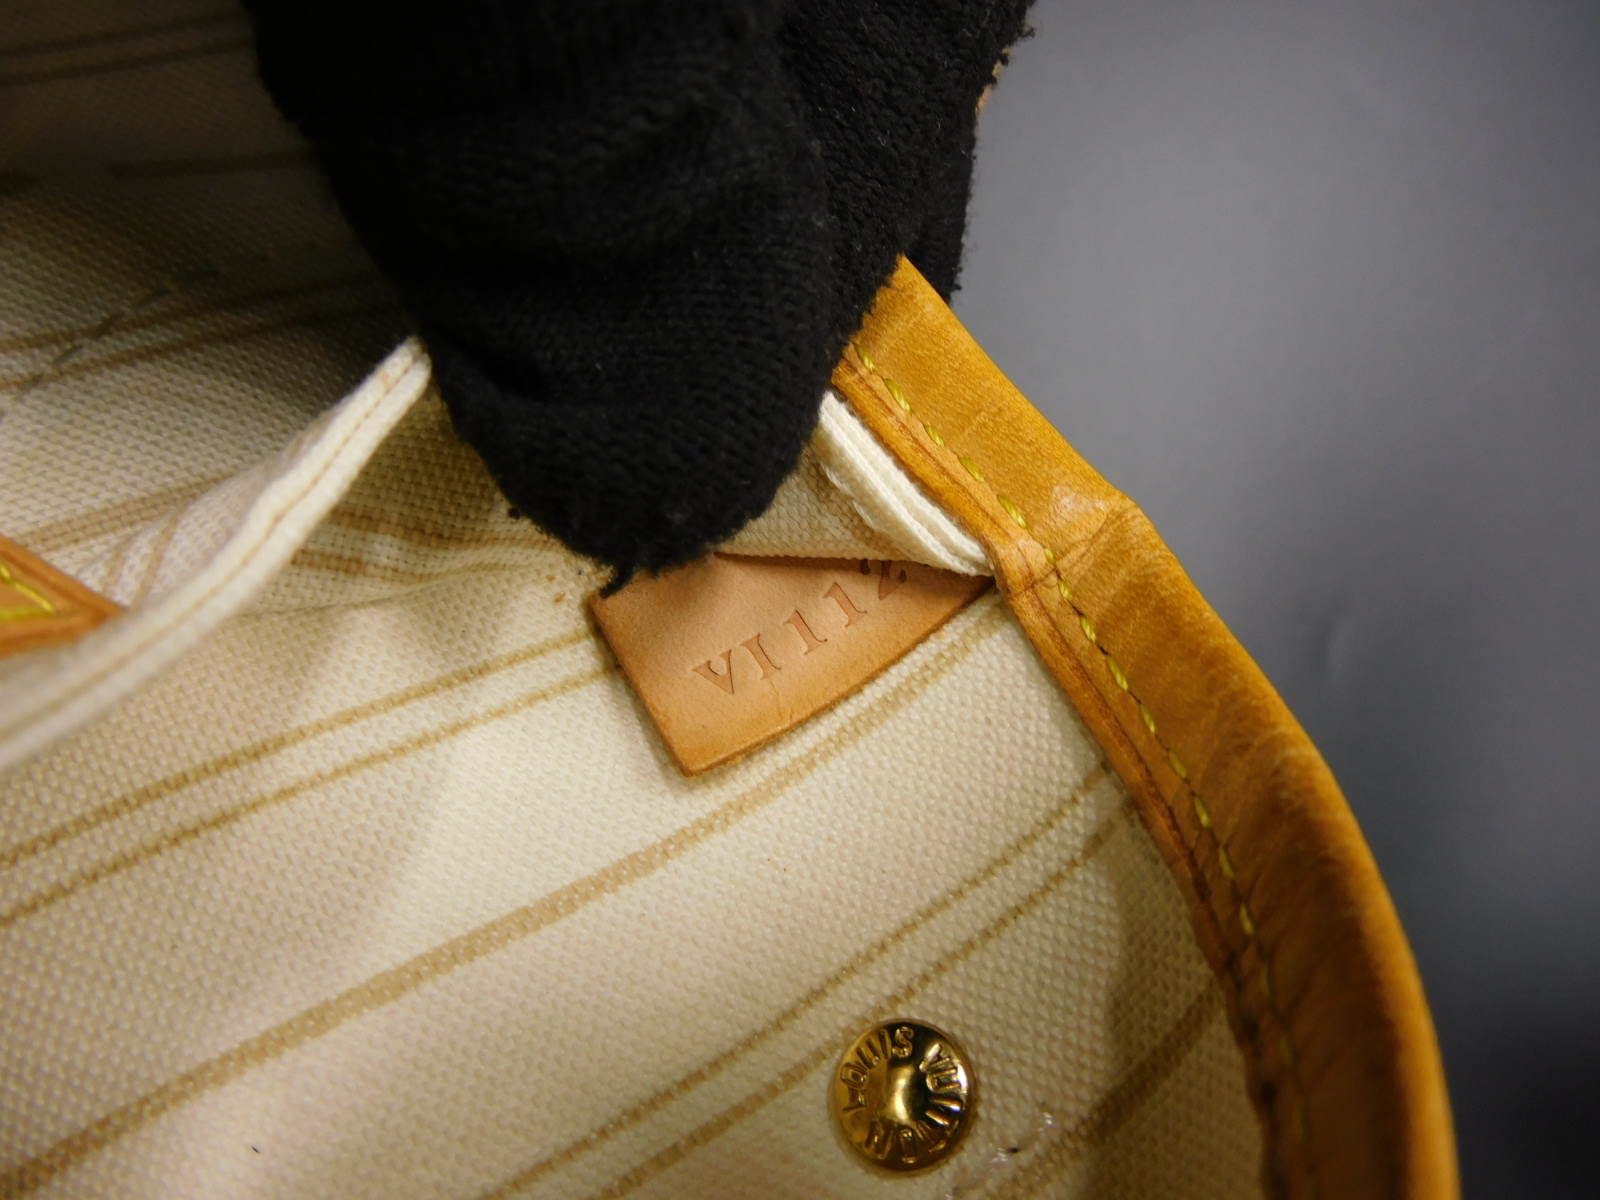 Auth LOUIS VUITTON Neverfull PM Damier Azur Tote Bag Shoulder Bag N51110 V-1636 | eBay